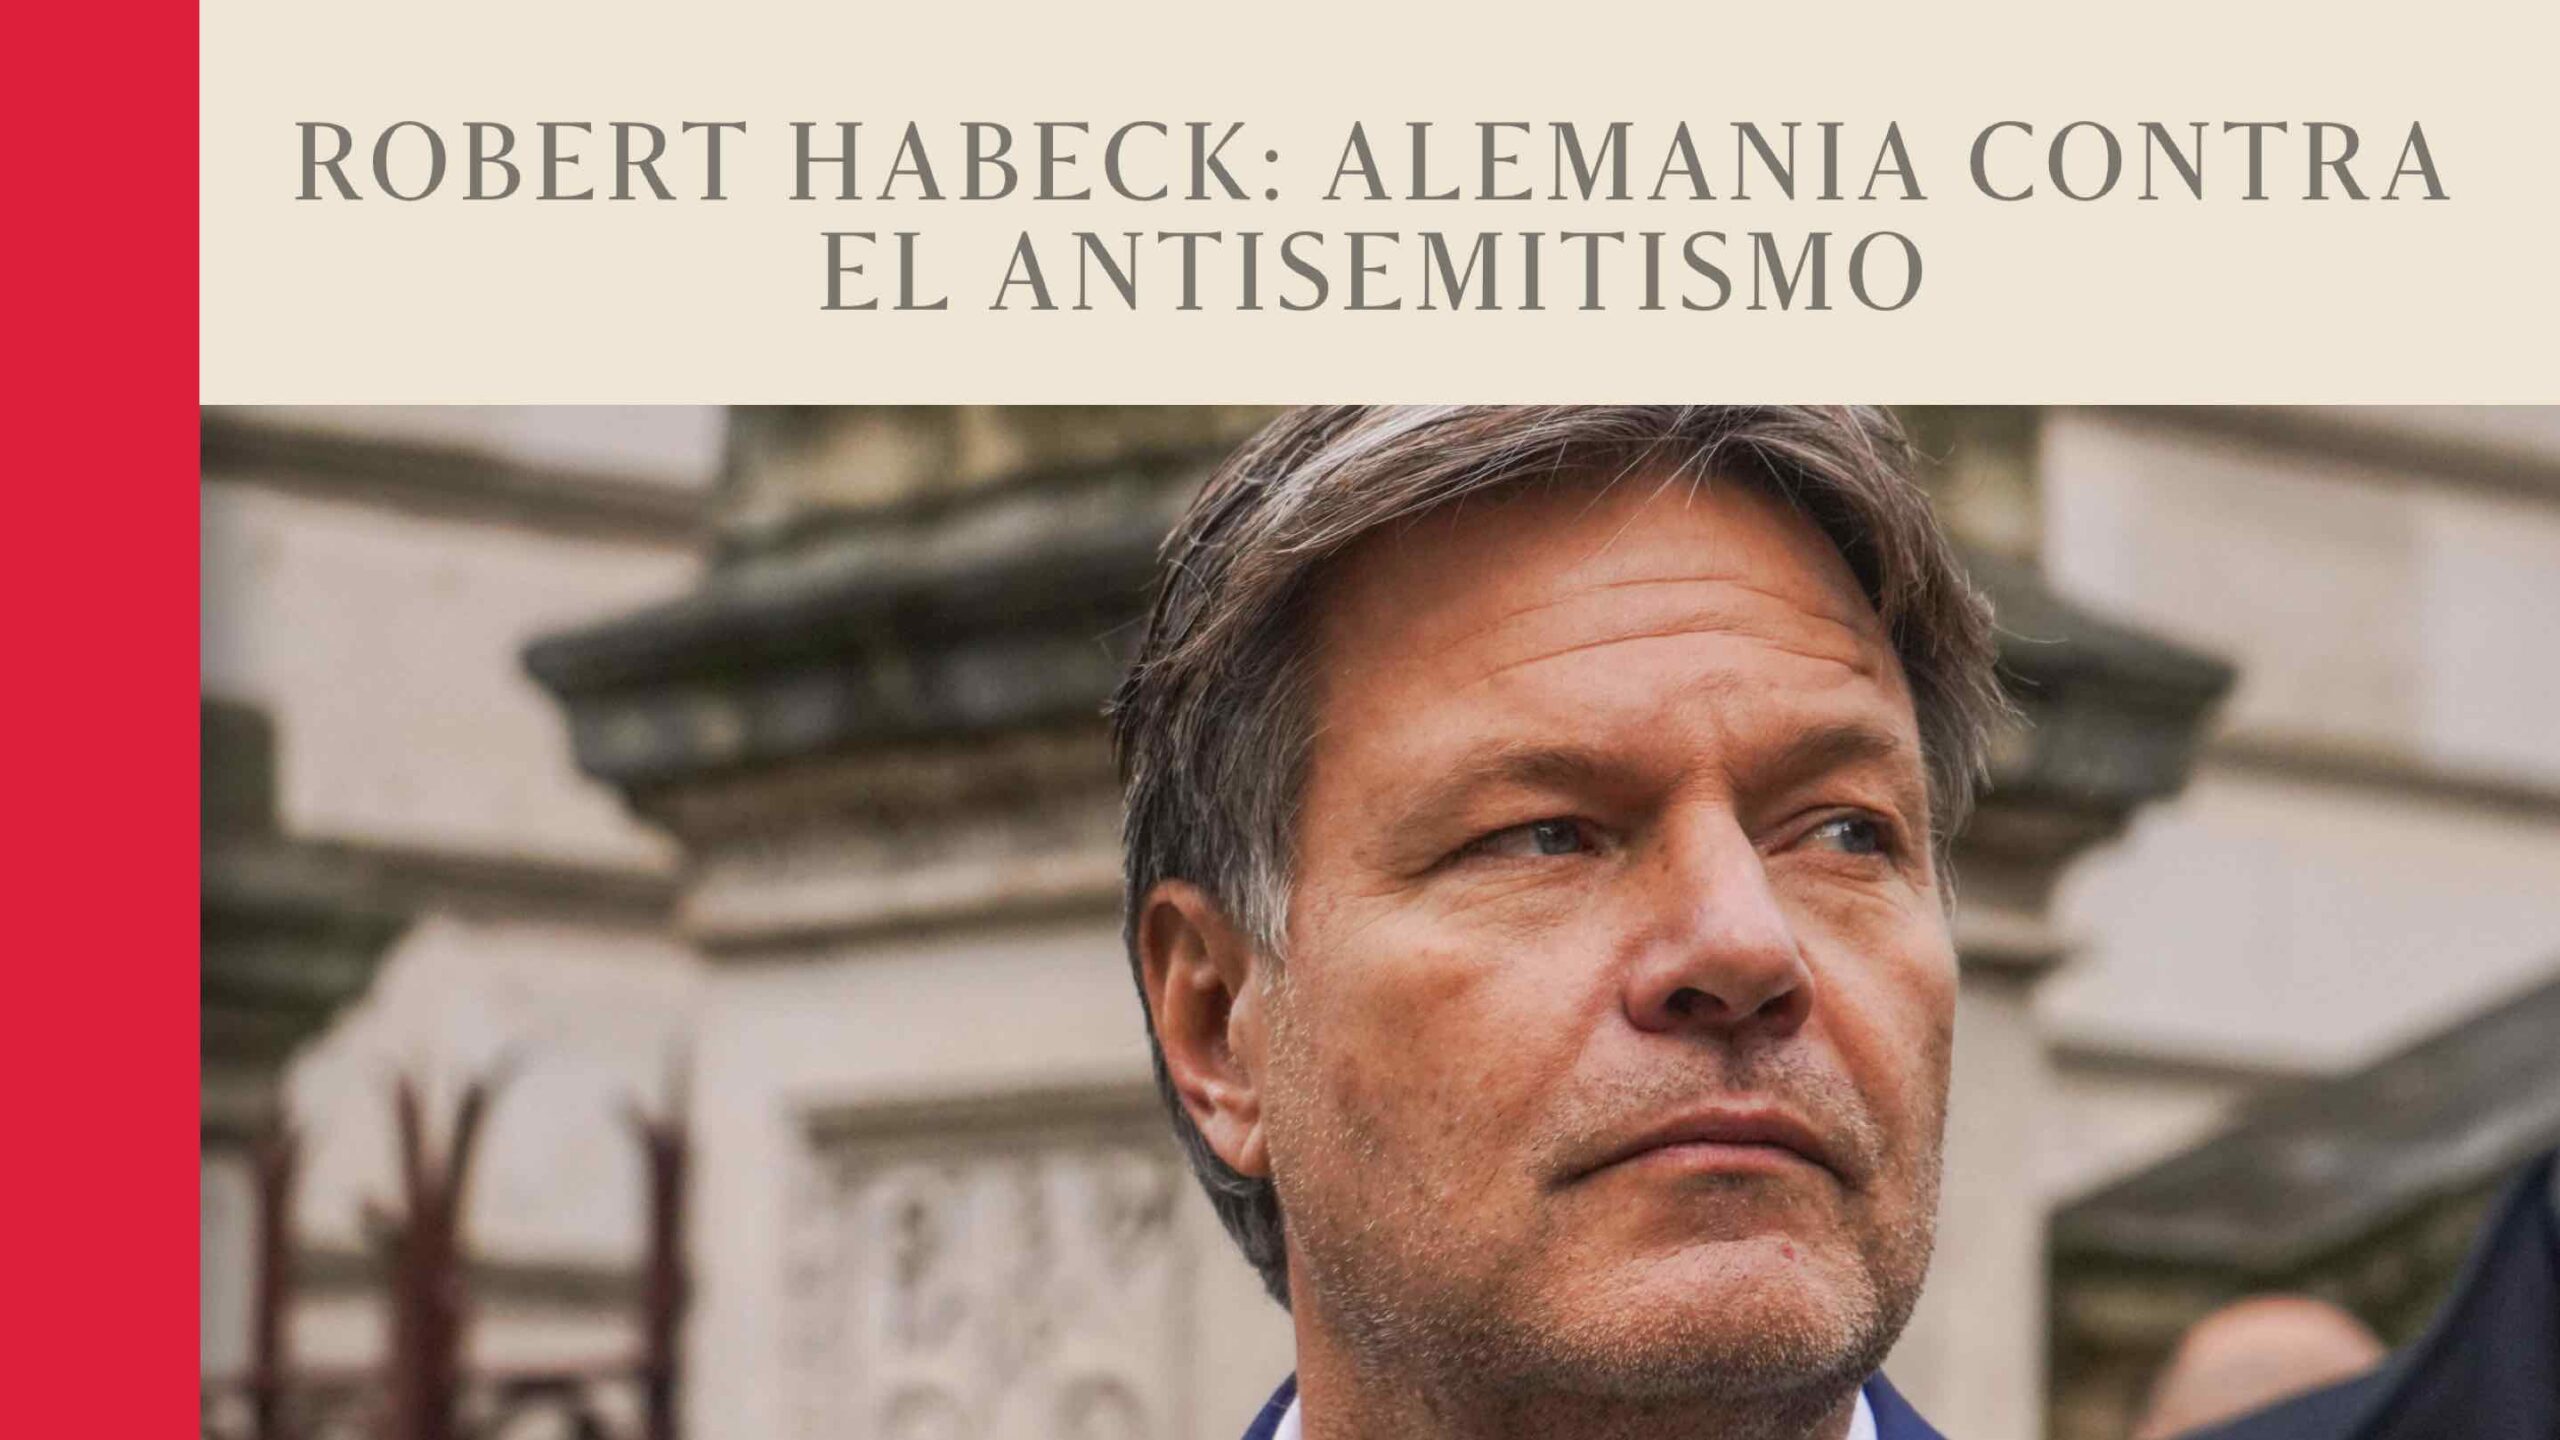 Robert Habeck: Alemania contra el antisemitismo - El Grand Continent